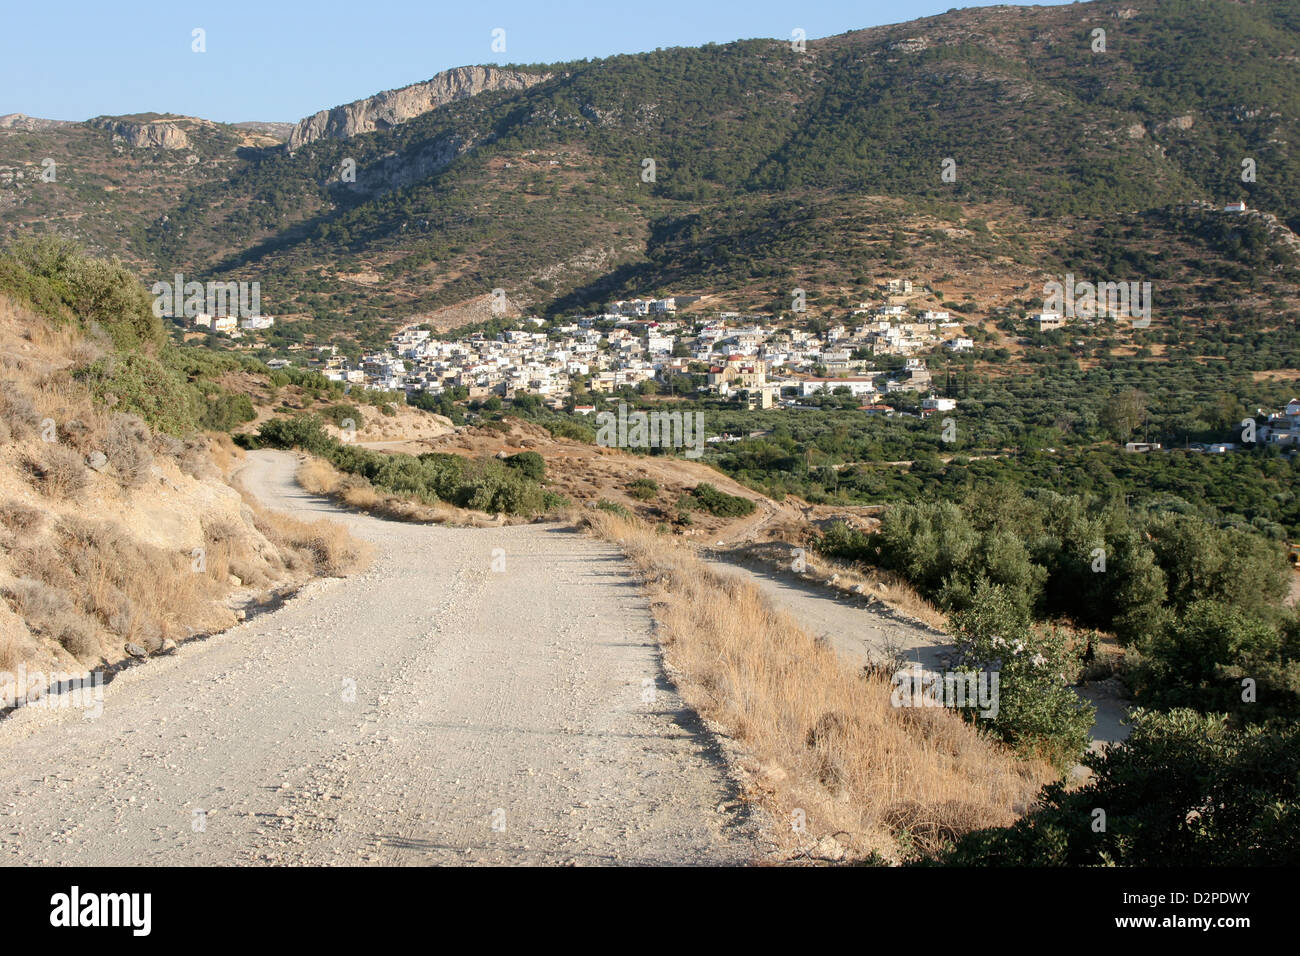 A pretty Cretan village in rural Greece Stock Photo